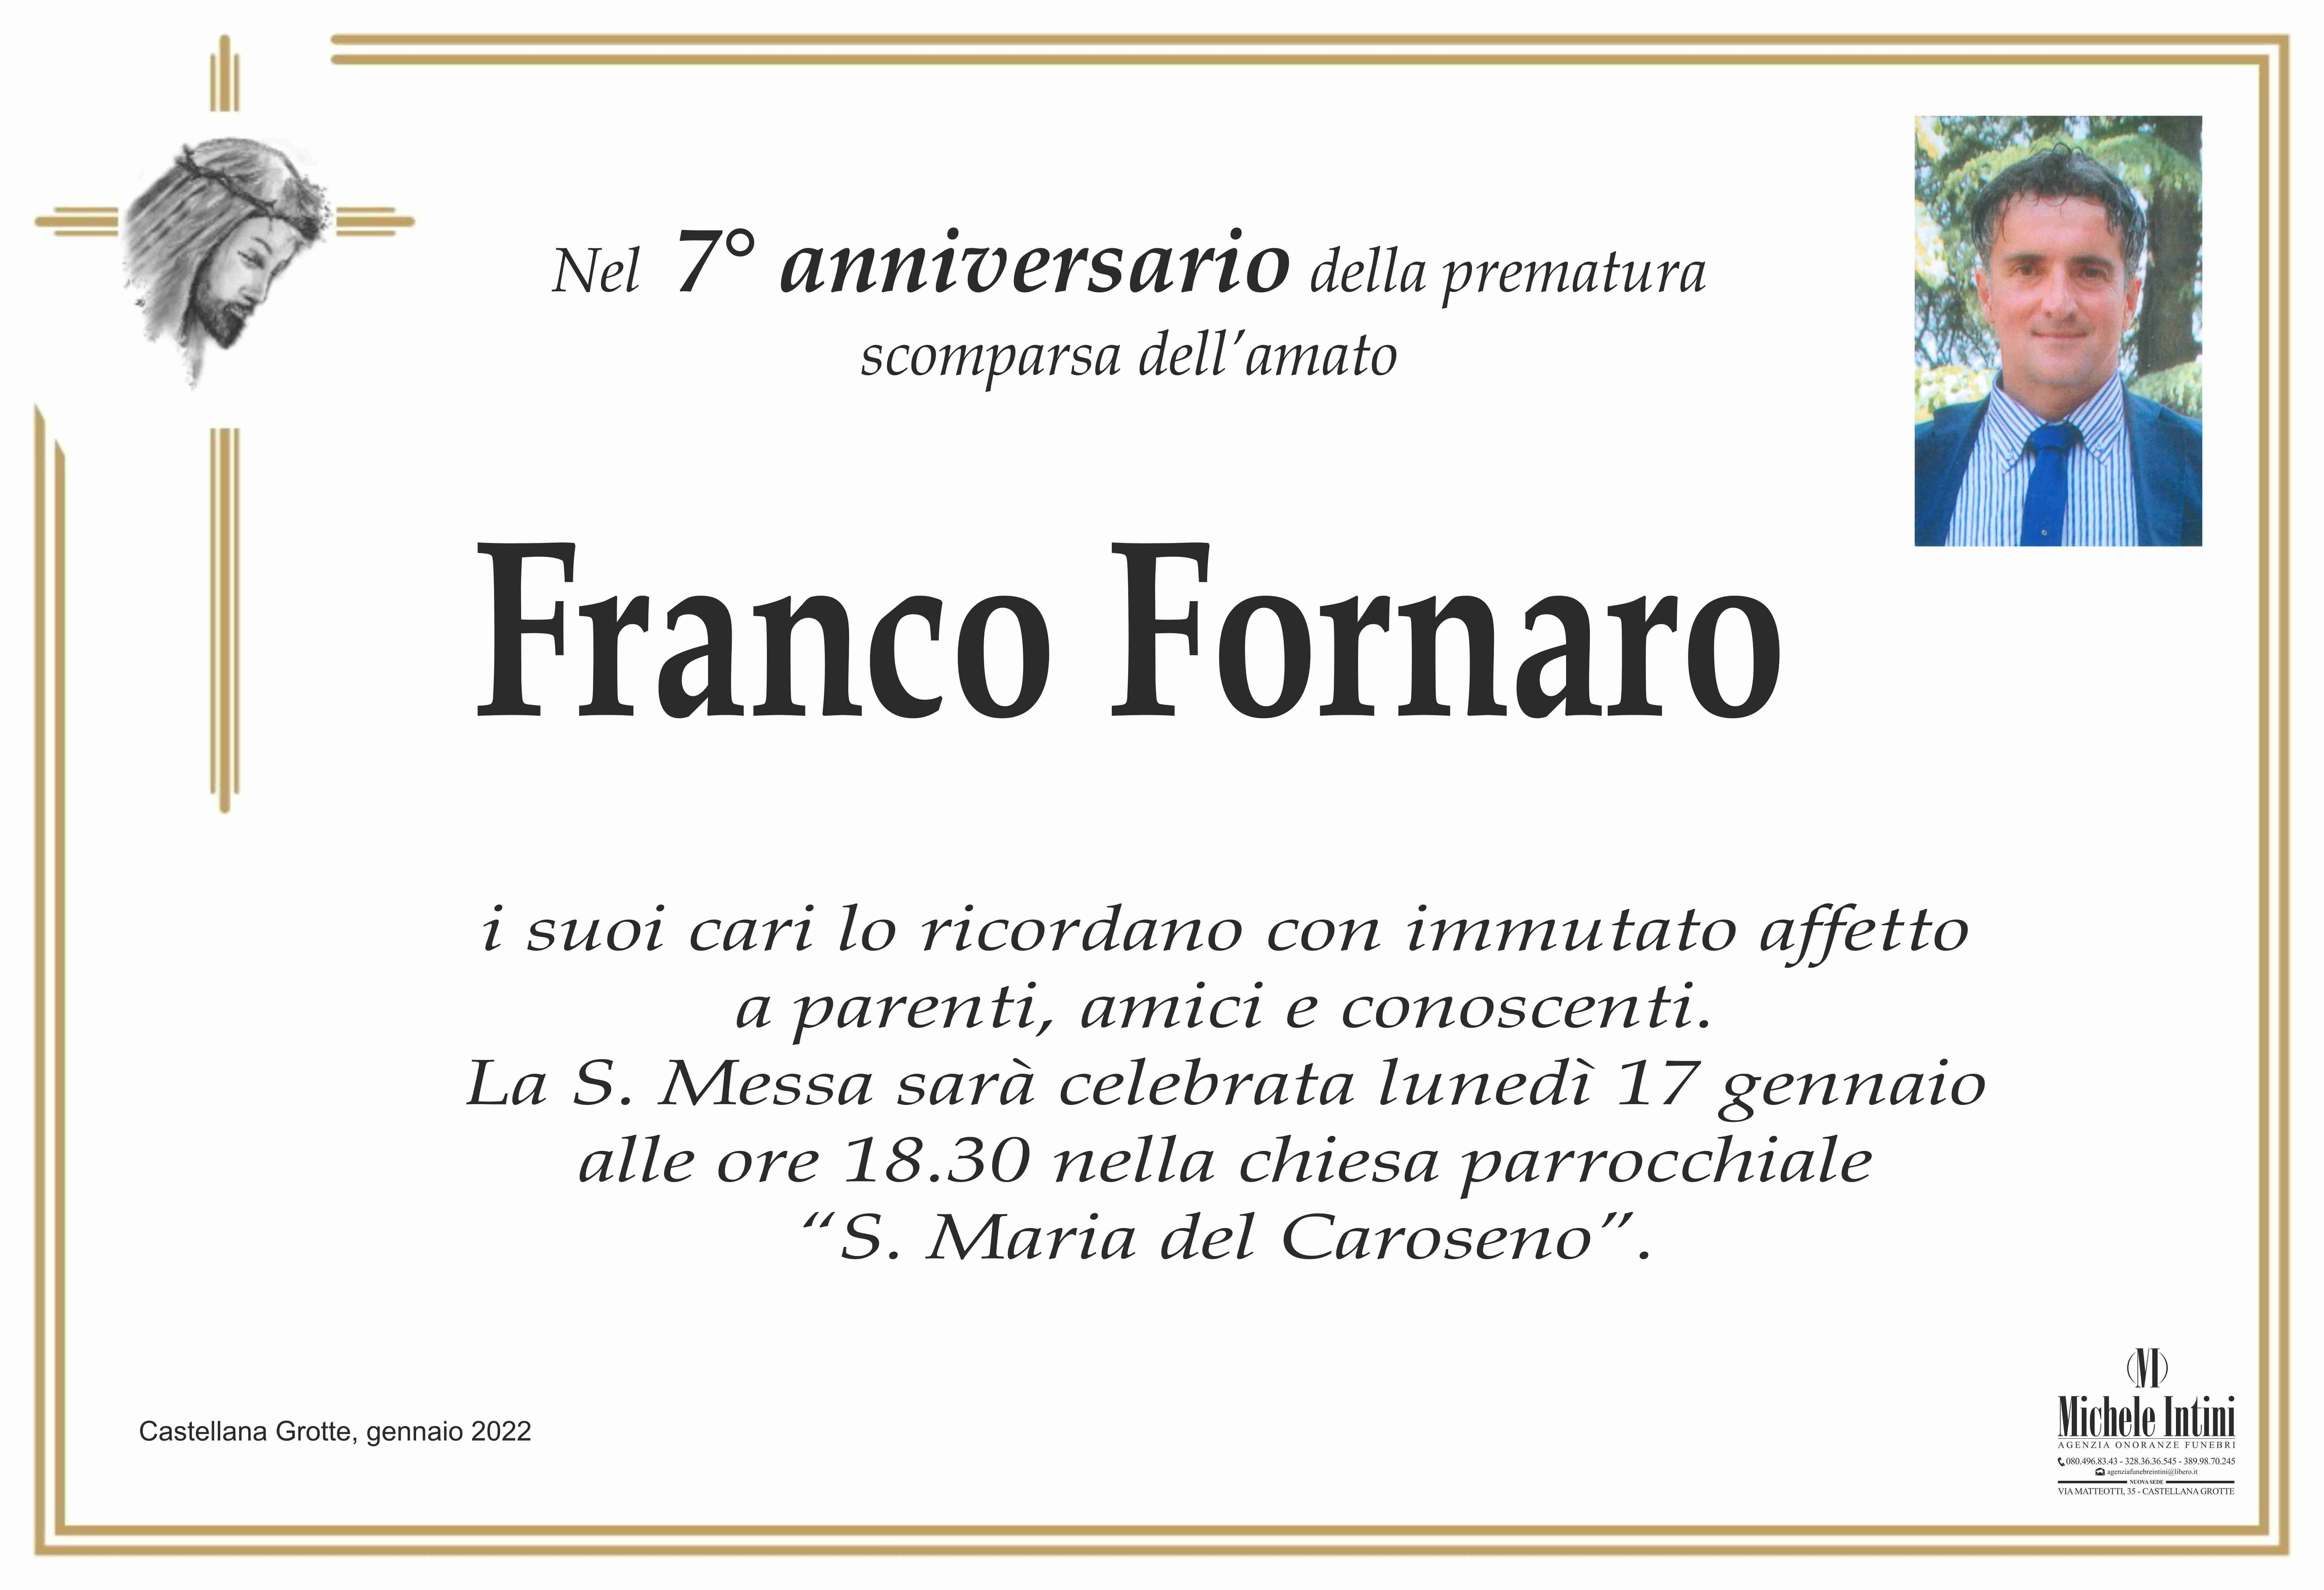 Franco Fornaro